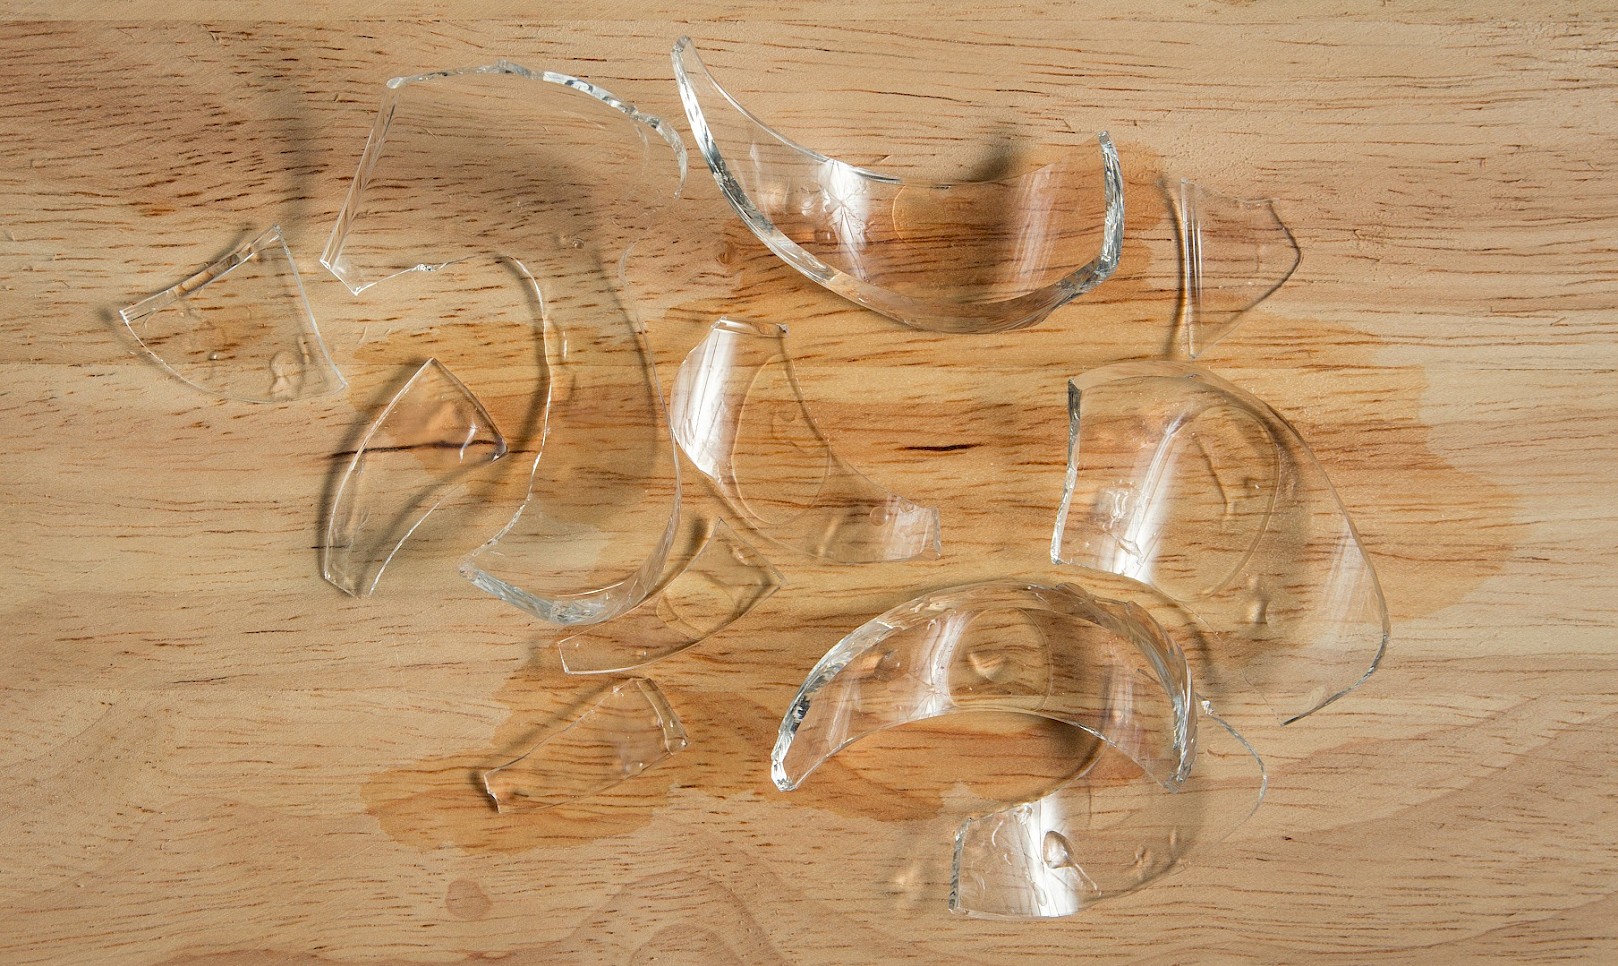 Failure analysis – glass mixing bowl